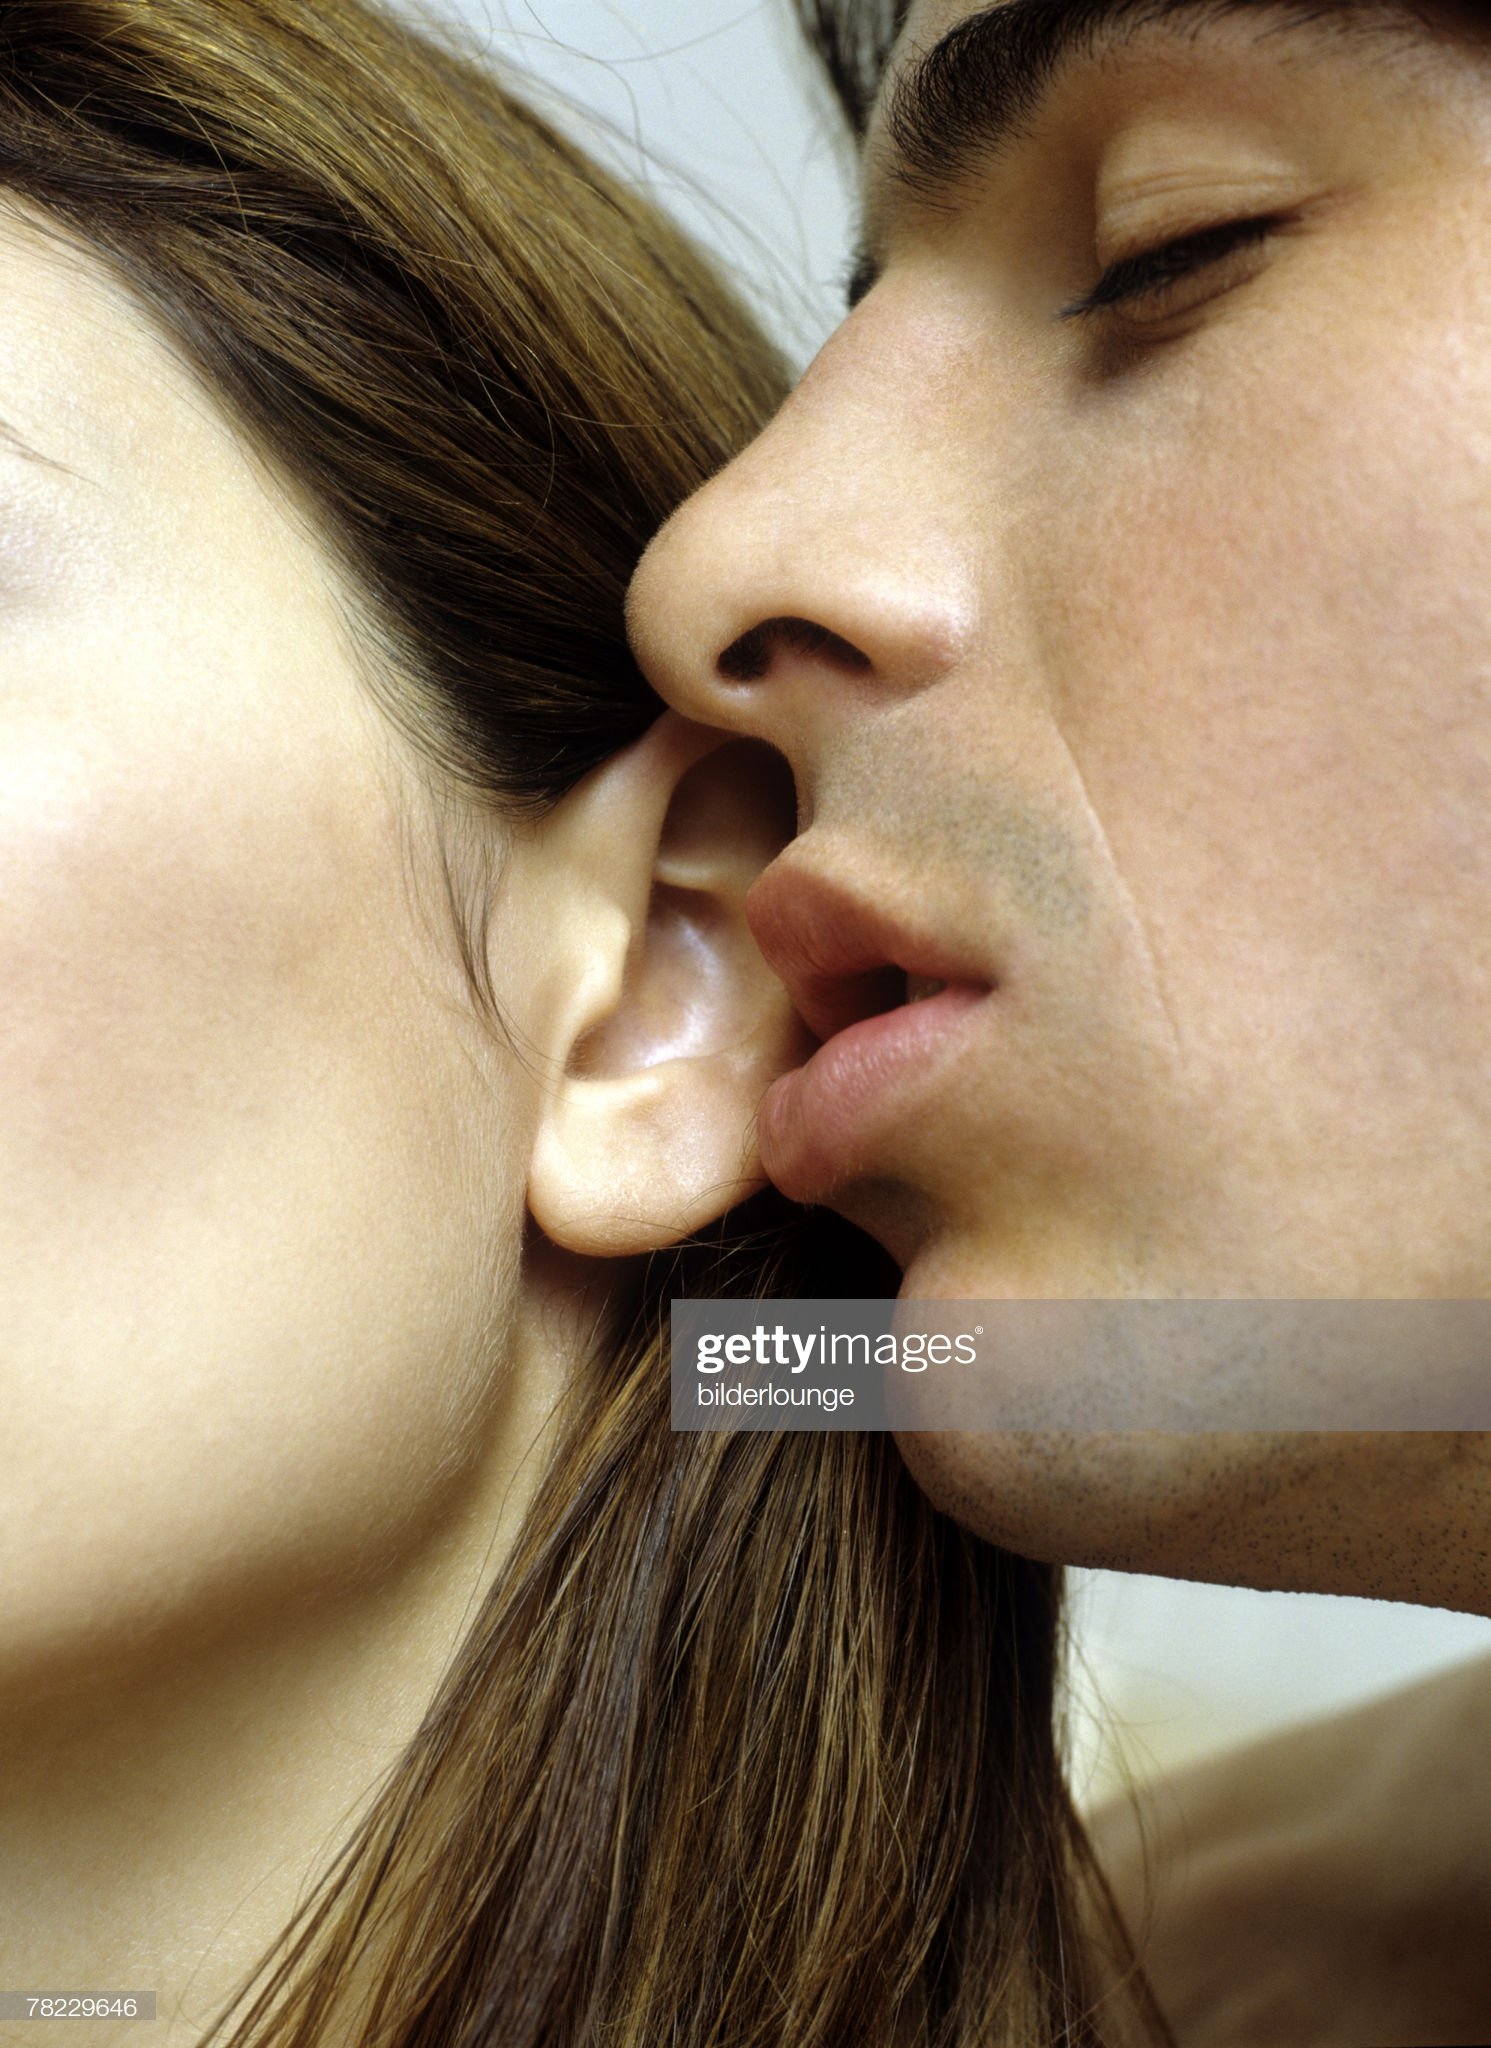 Мужчина лижет языком. Поцелуй в ушко. Нежный поцелуй. Целует в ушко. Страстные поцелуи.